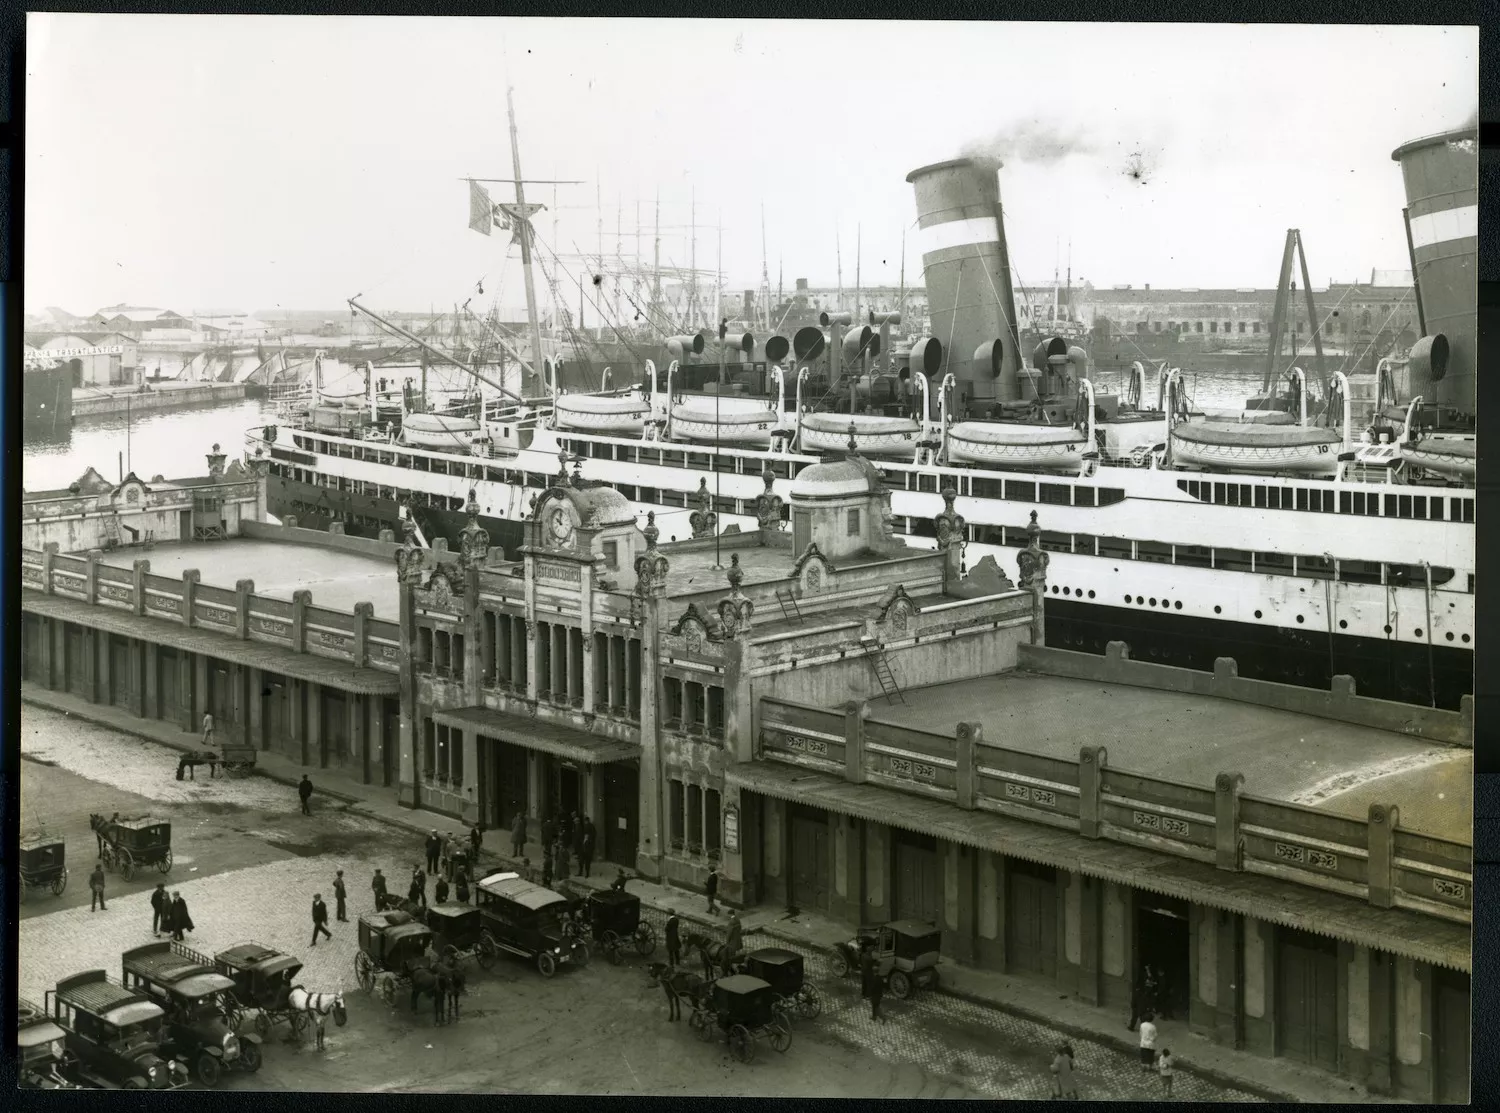 L’estació Marítima Internacional de Barcelona l’any 1924. En segon terme es veu el vapor de passatgers ‘Conte Rosso’ amarrat al port. Al fons, el Moll nou.